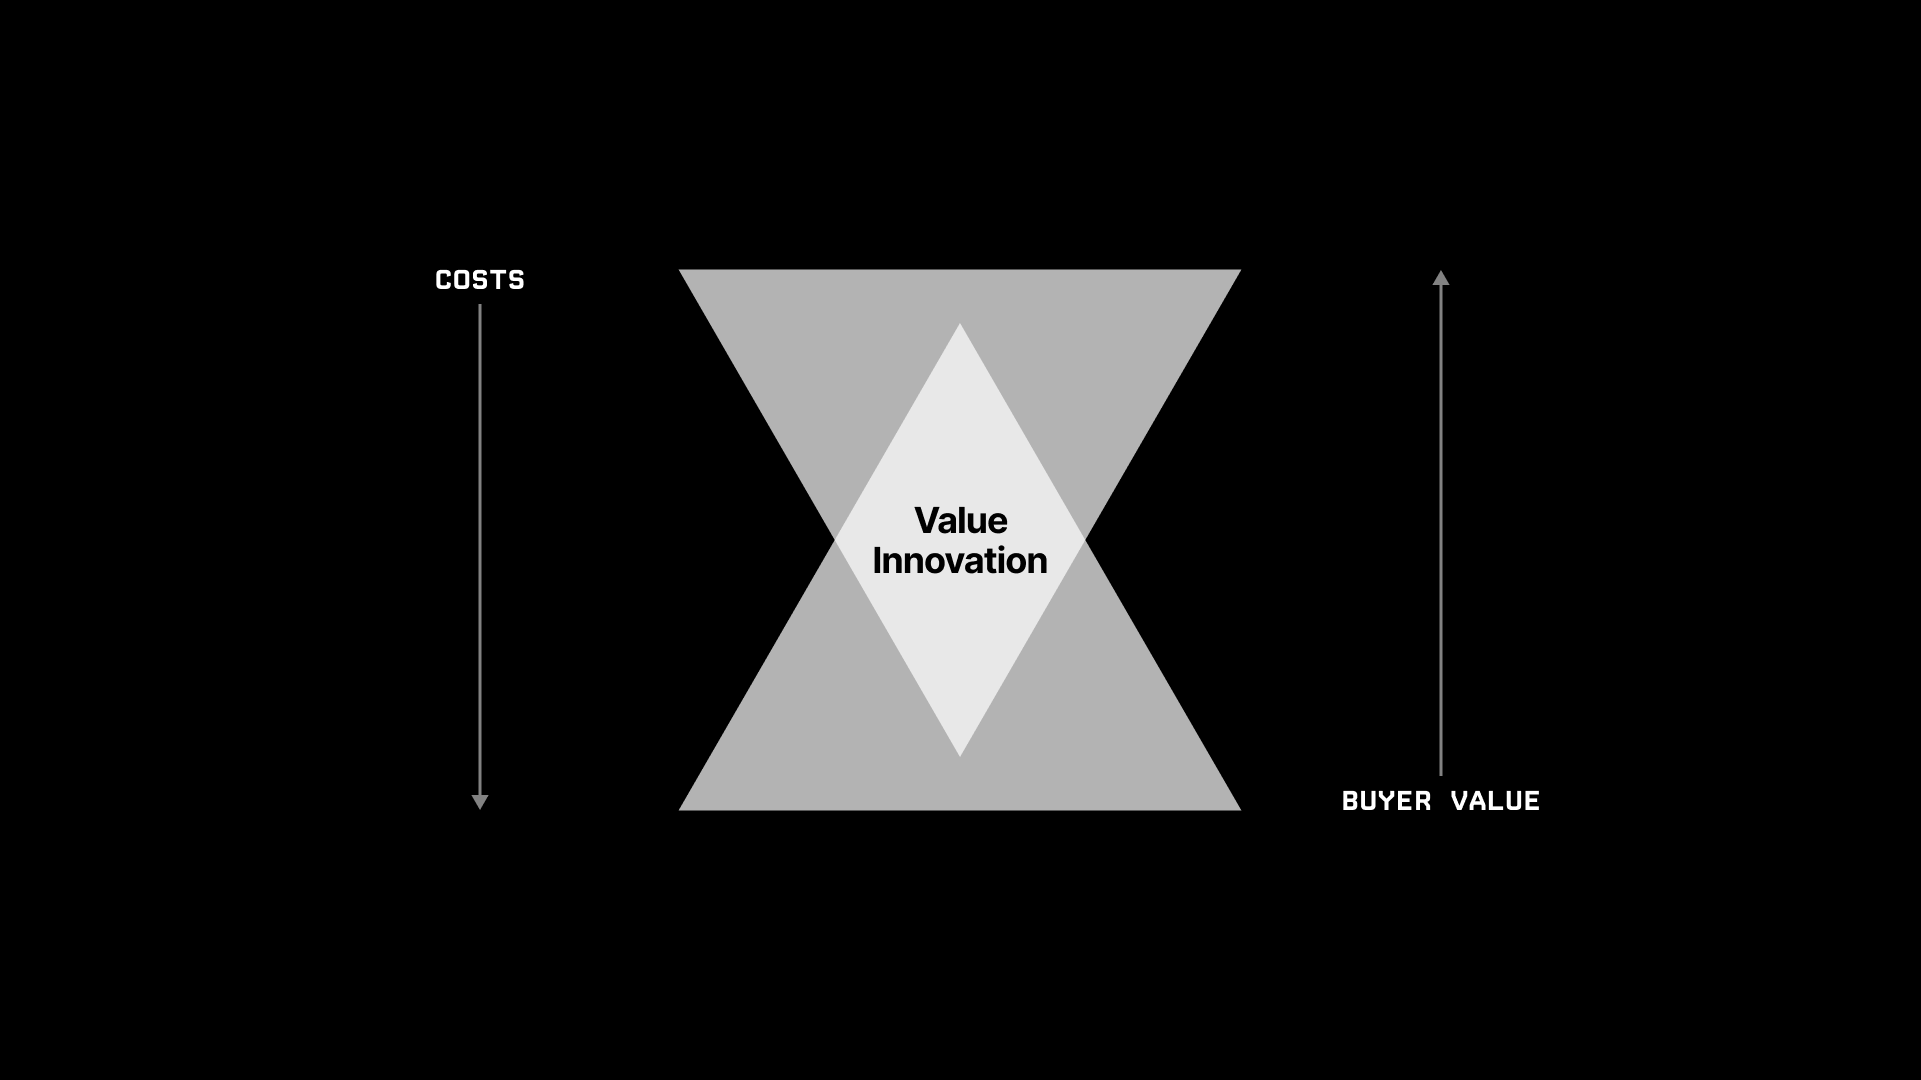 Value Innovation diagram.